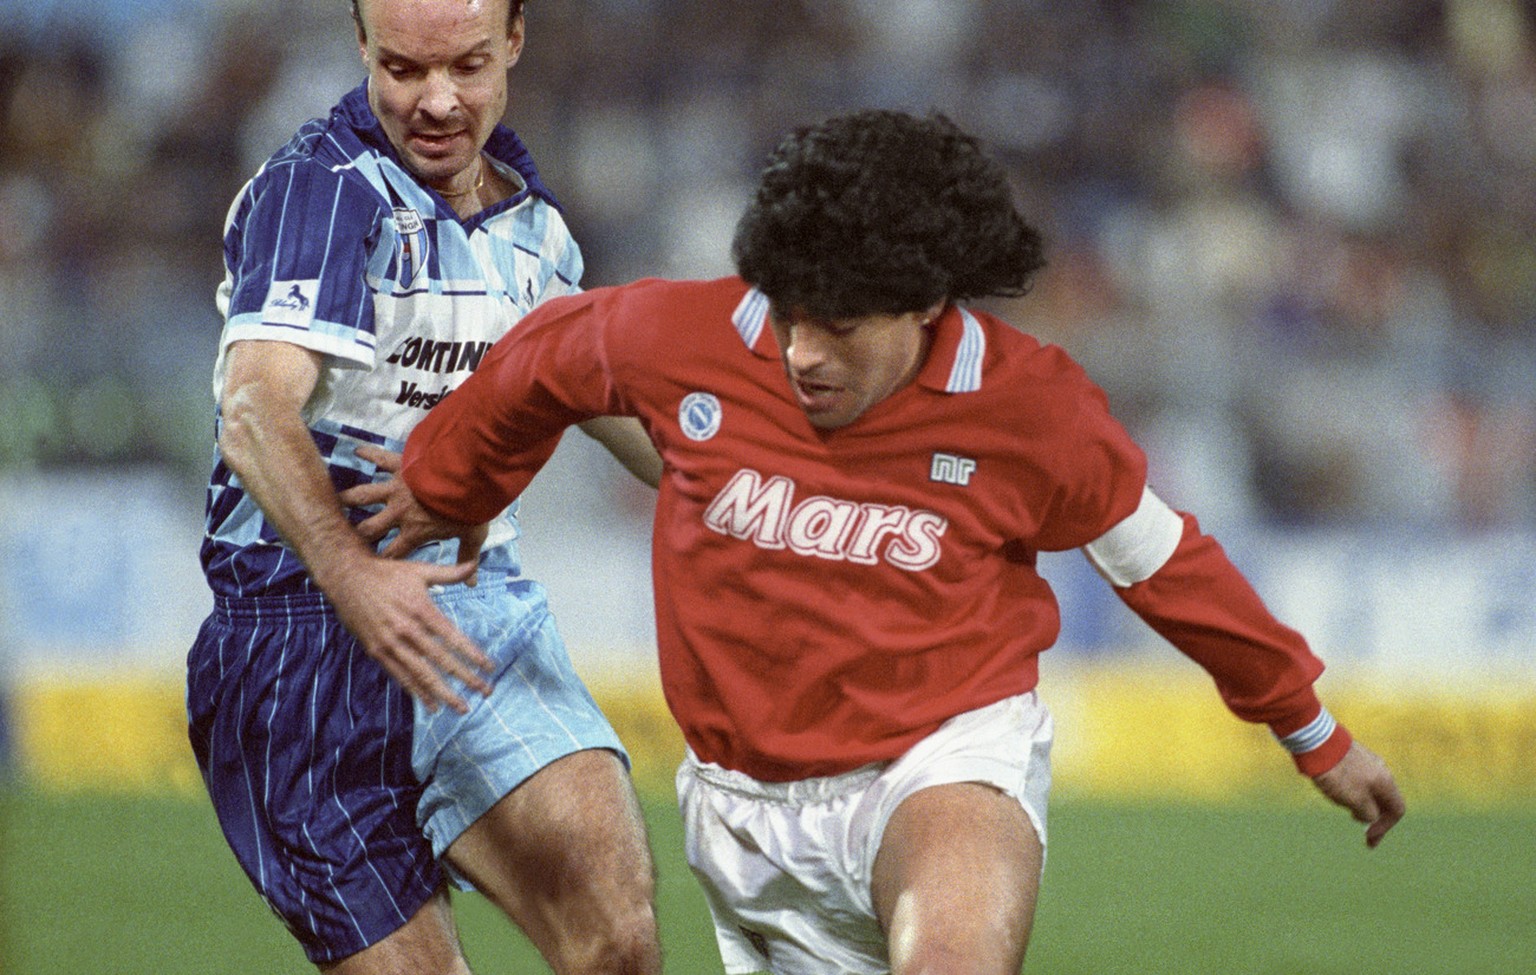 Diego Maradona (rechts) vom SSC Napoli im Zweikampf mit dem Wettinger Spieler Svensson waehrend des UEFA Cup Spiels gegen den FC Wettingen, aufgenommen am 17. Oktober 1989 im Letzigrund-Stadion in Zue ...